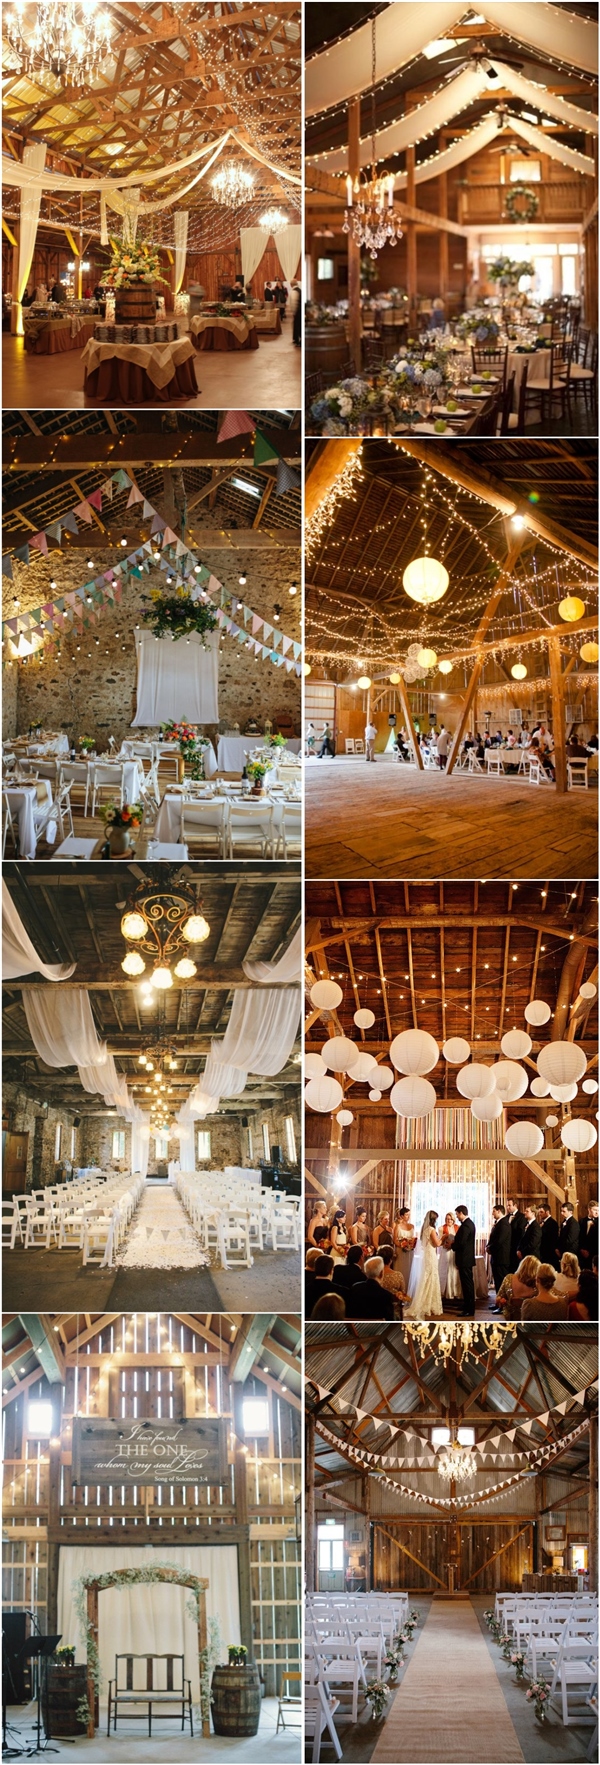 rustic barn wedding ideas- country barn wedding decor ideas